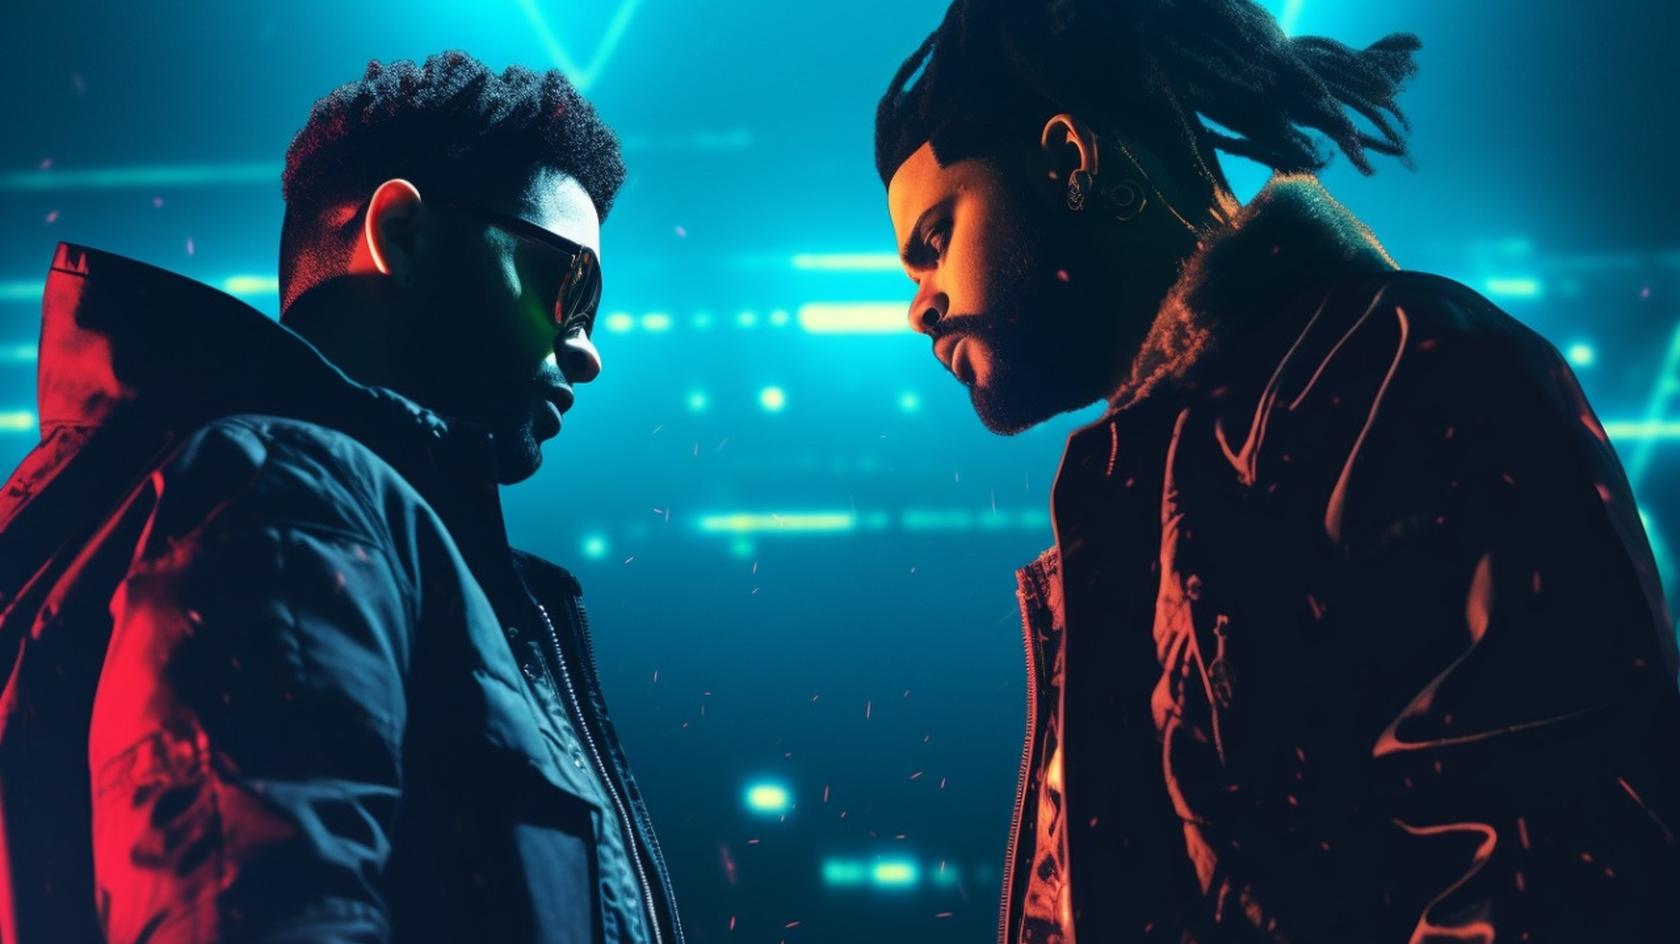 ИИ-песня с голосами The Weeknd и Дрейка может выиграть Грэмми // Иллюстрация: Midjourney